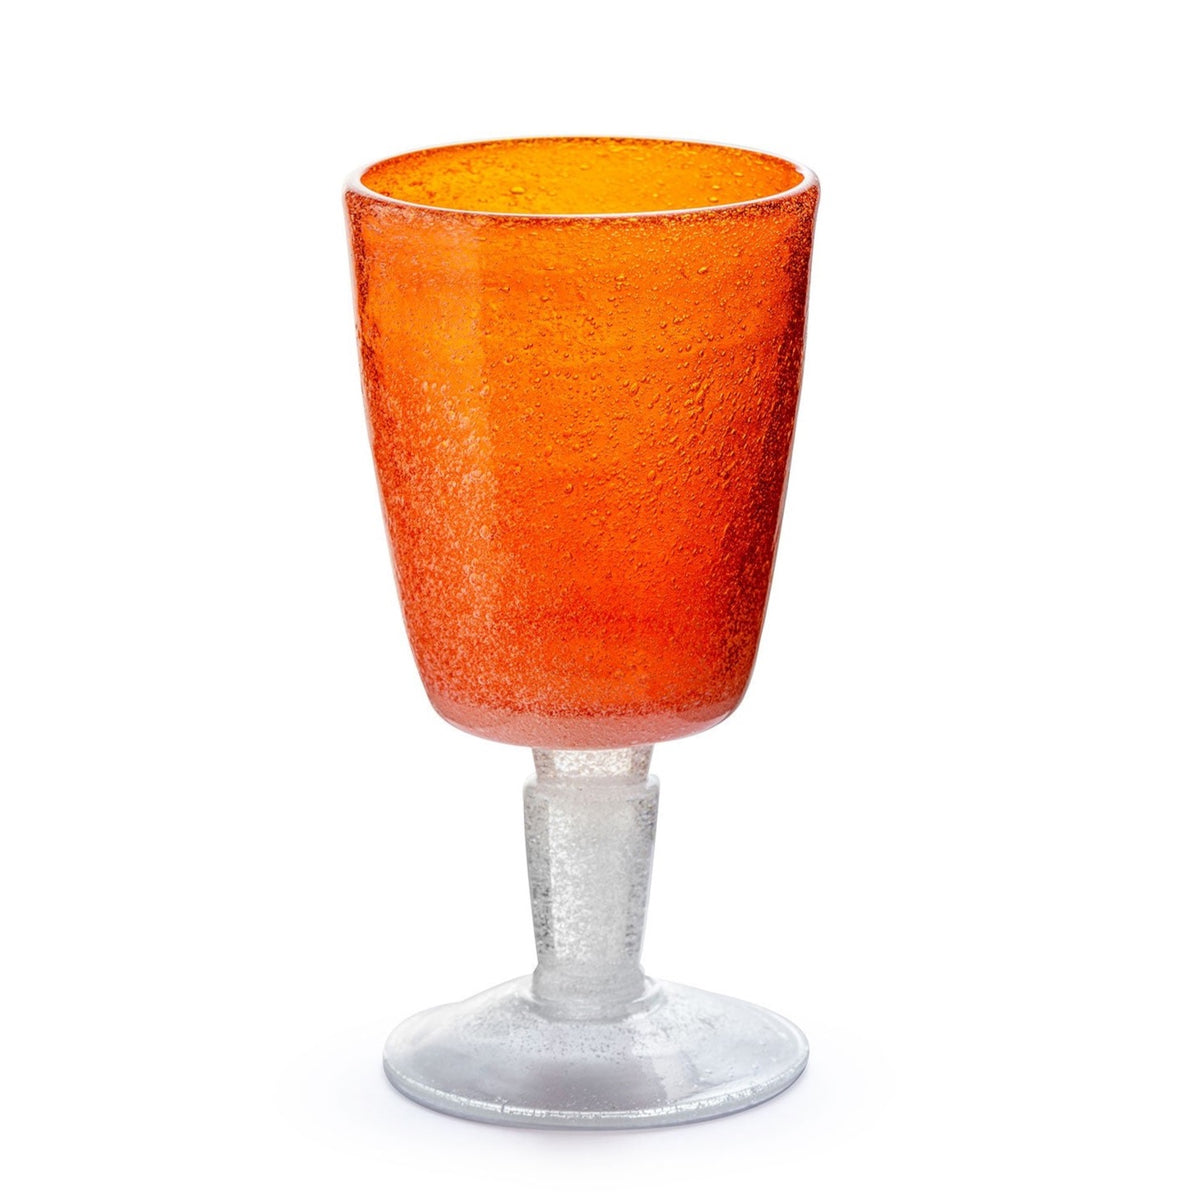 Memento Glassware from Italy. Wine Goblet in Orange